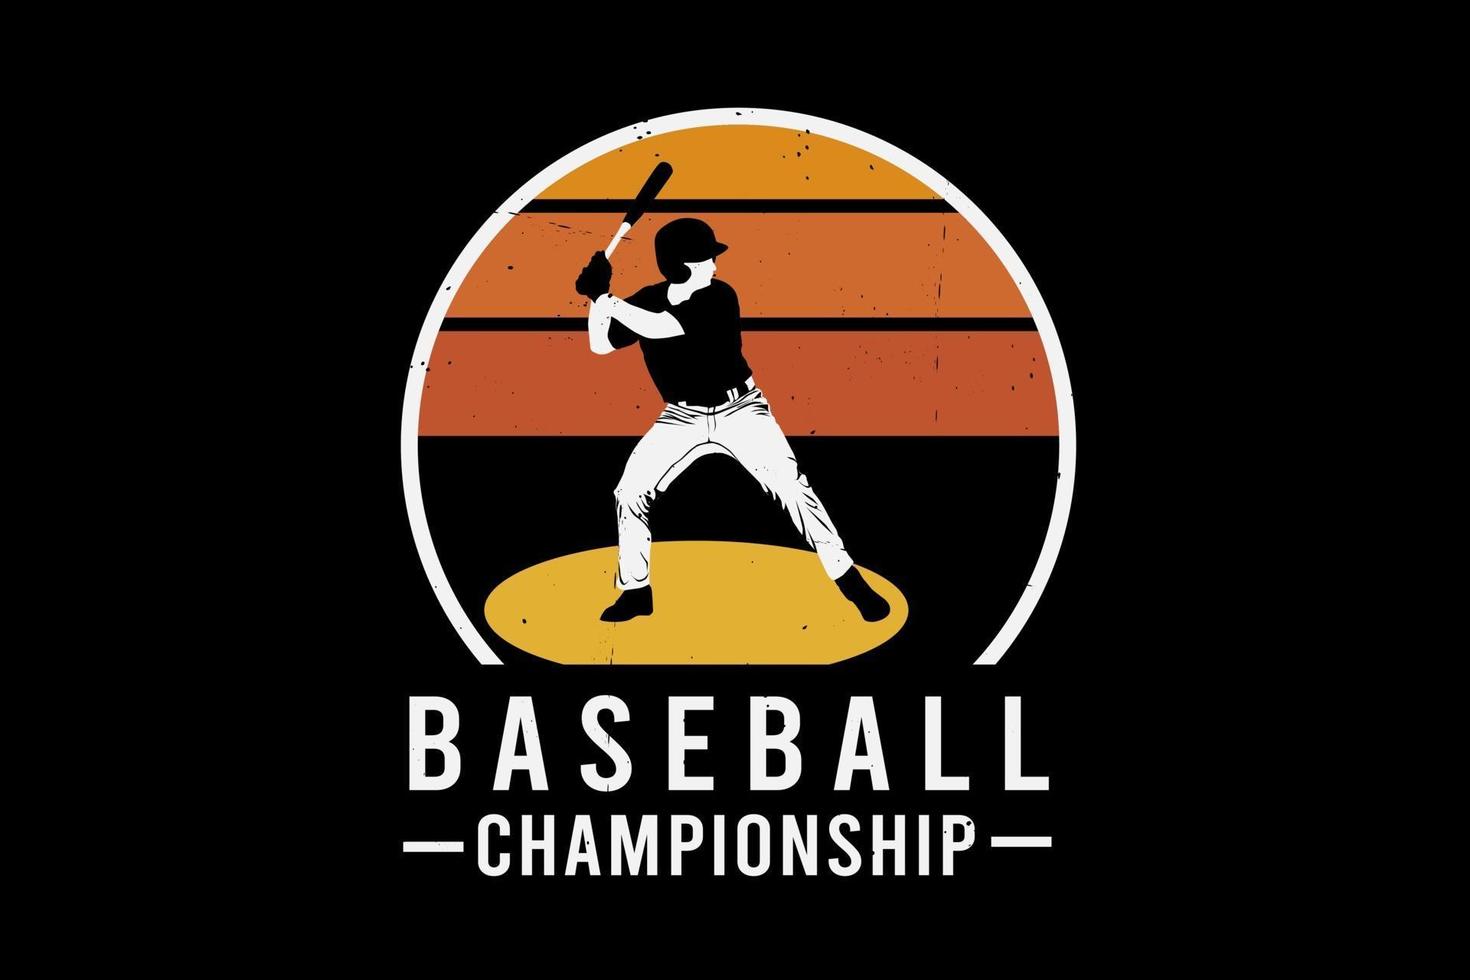 Baseball-Meisterschafts-Silhouette-Design vektor